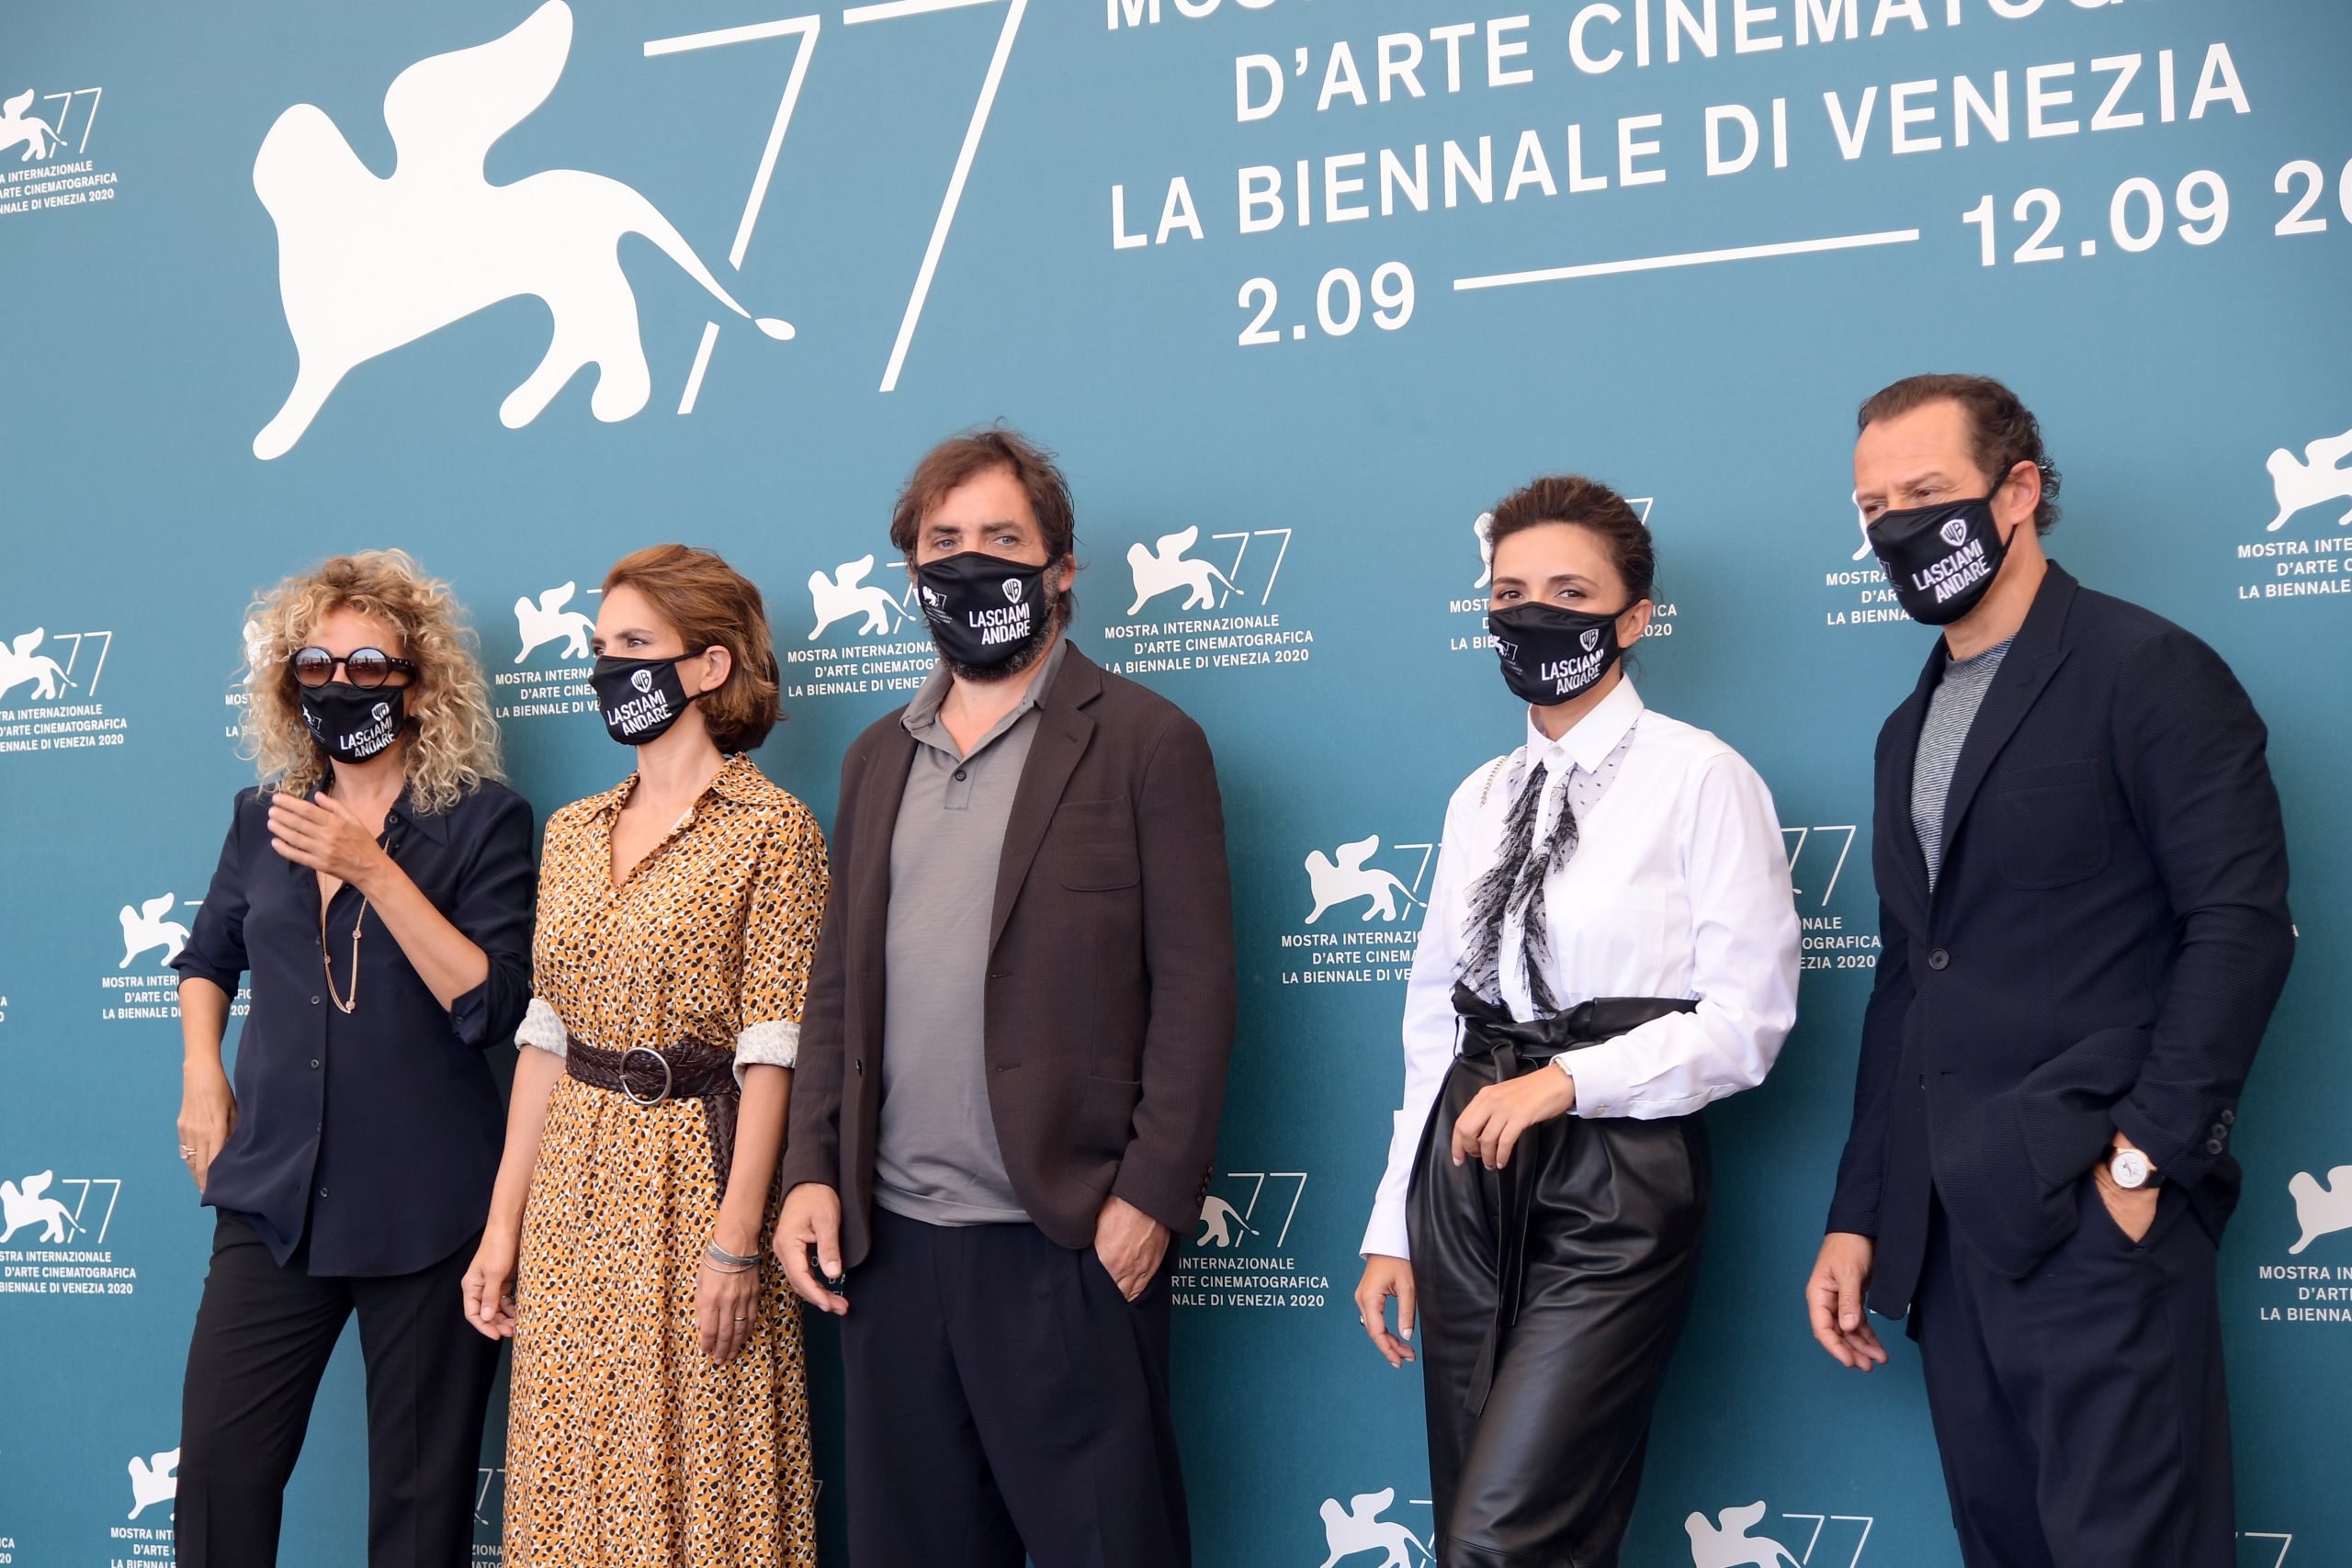 Многие гости фестиваля даже позировали в масках. Фото Gian Mattia D'Alberto/LaPresse via ZUMA Press/Scanpix/Leta 